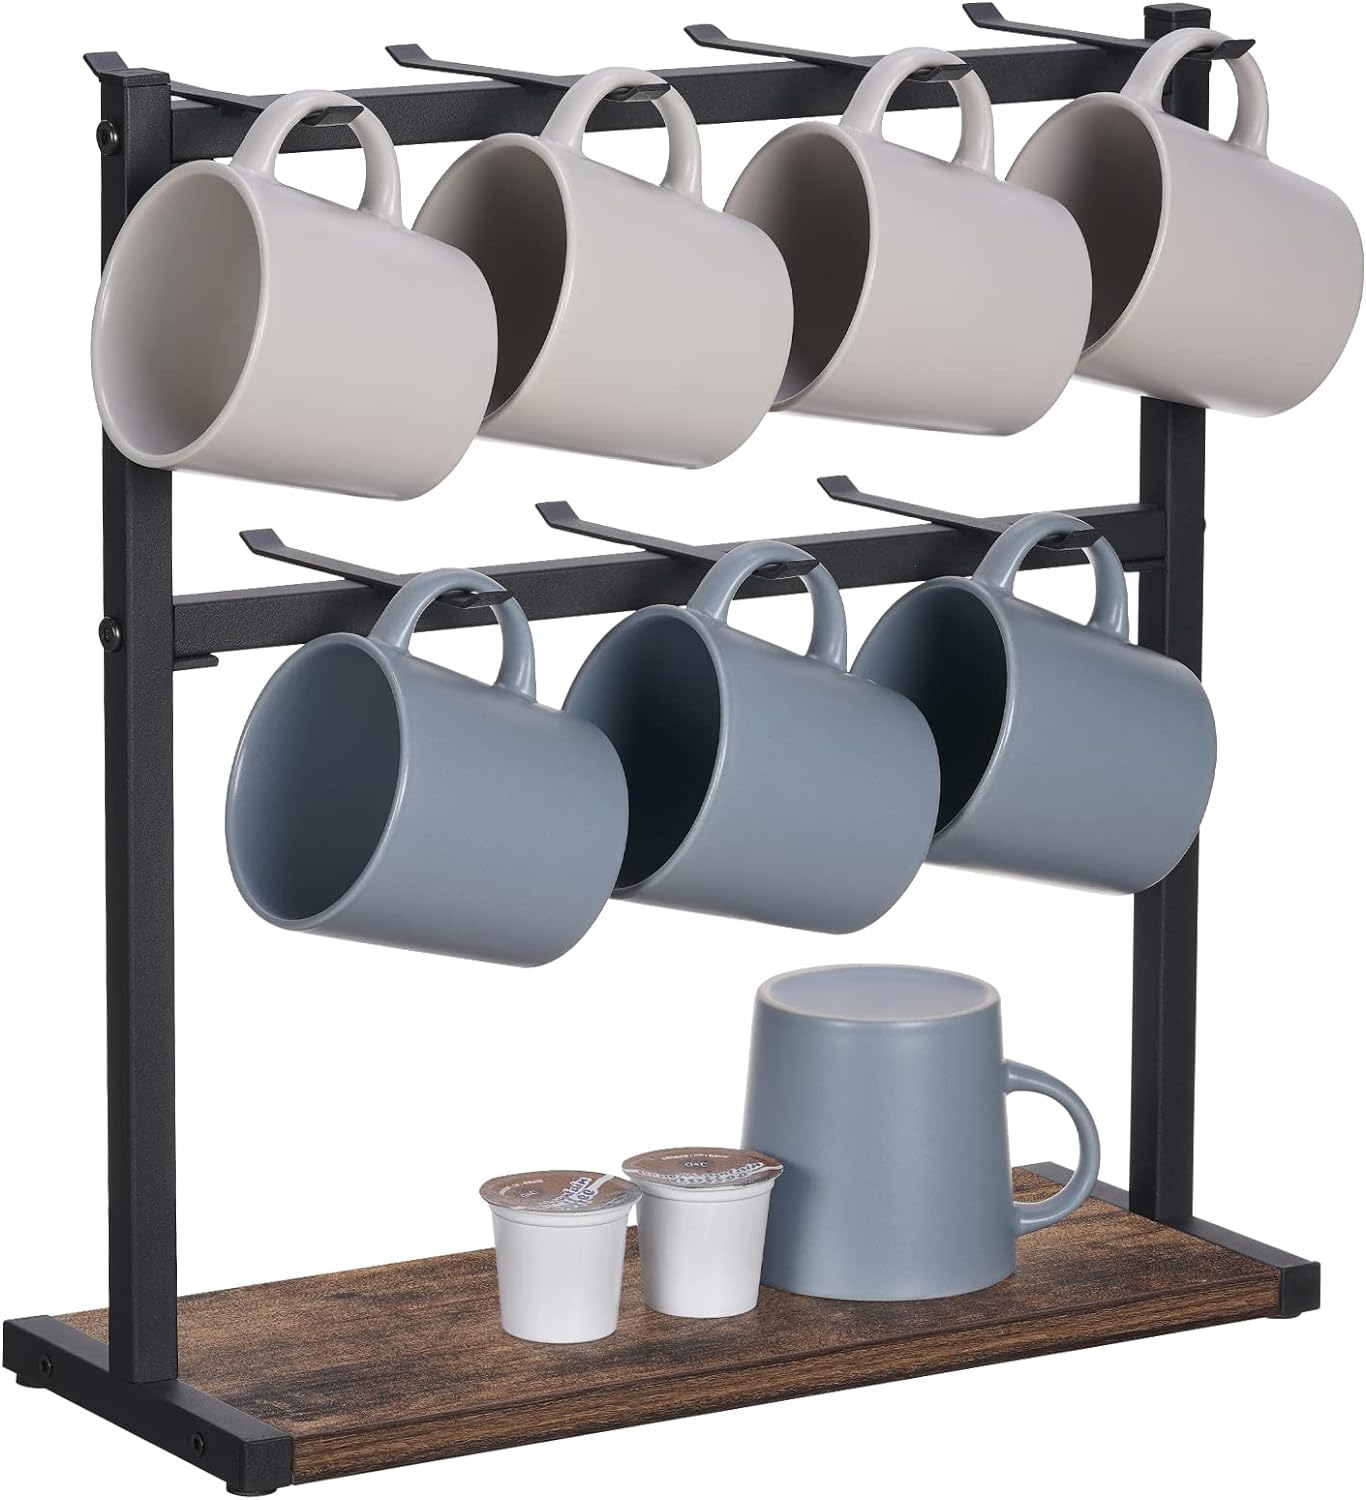 Solid Wood Mug Holder Mug Rack Coffee Cup Holder Key Rack Mug Tree